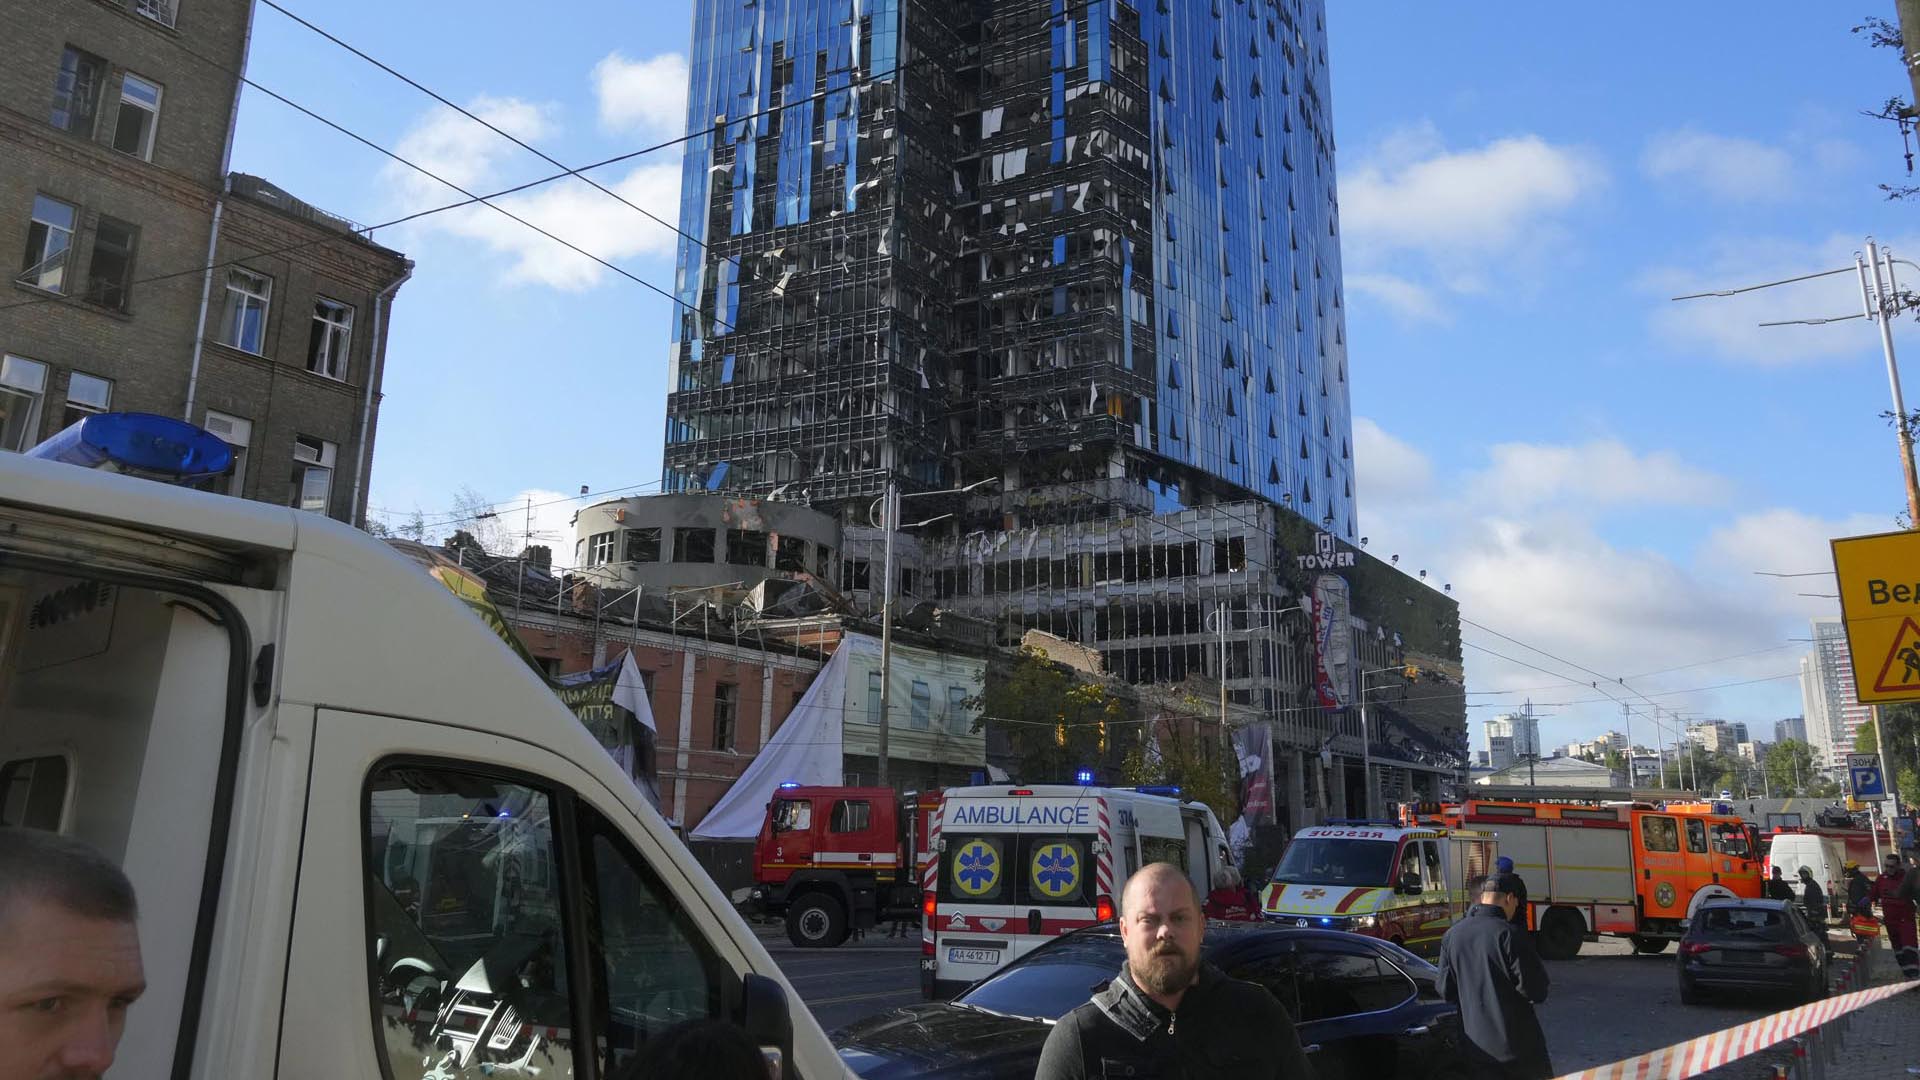 El centro de negocios Central Kiev, conocido como Torre DTEK, sufrió graves daños. El edificio alberga el centro de visas alemán, entre otros negocios. (AP/Efrem Lukatsky)